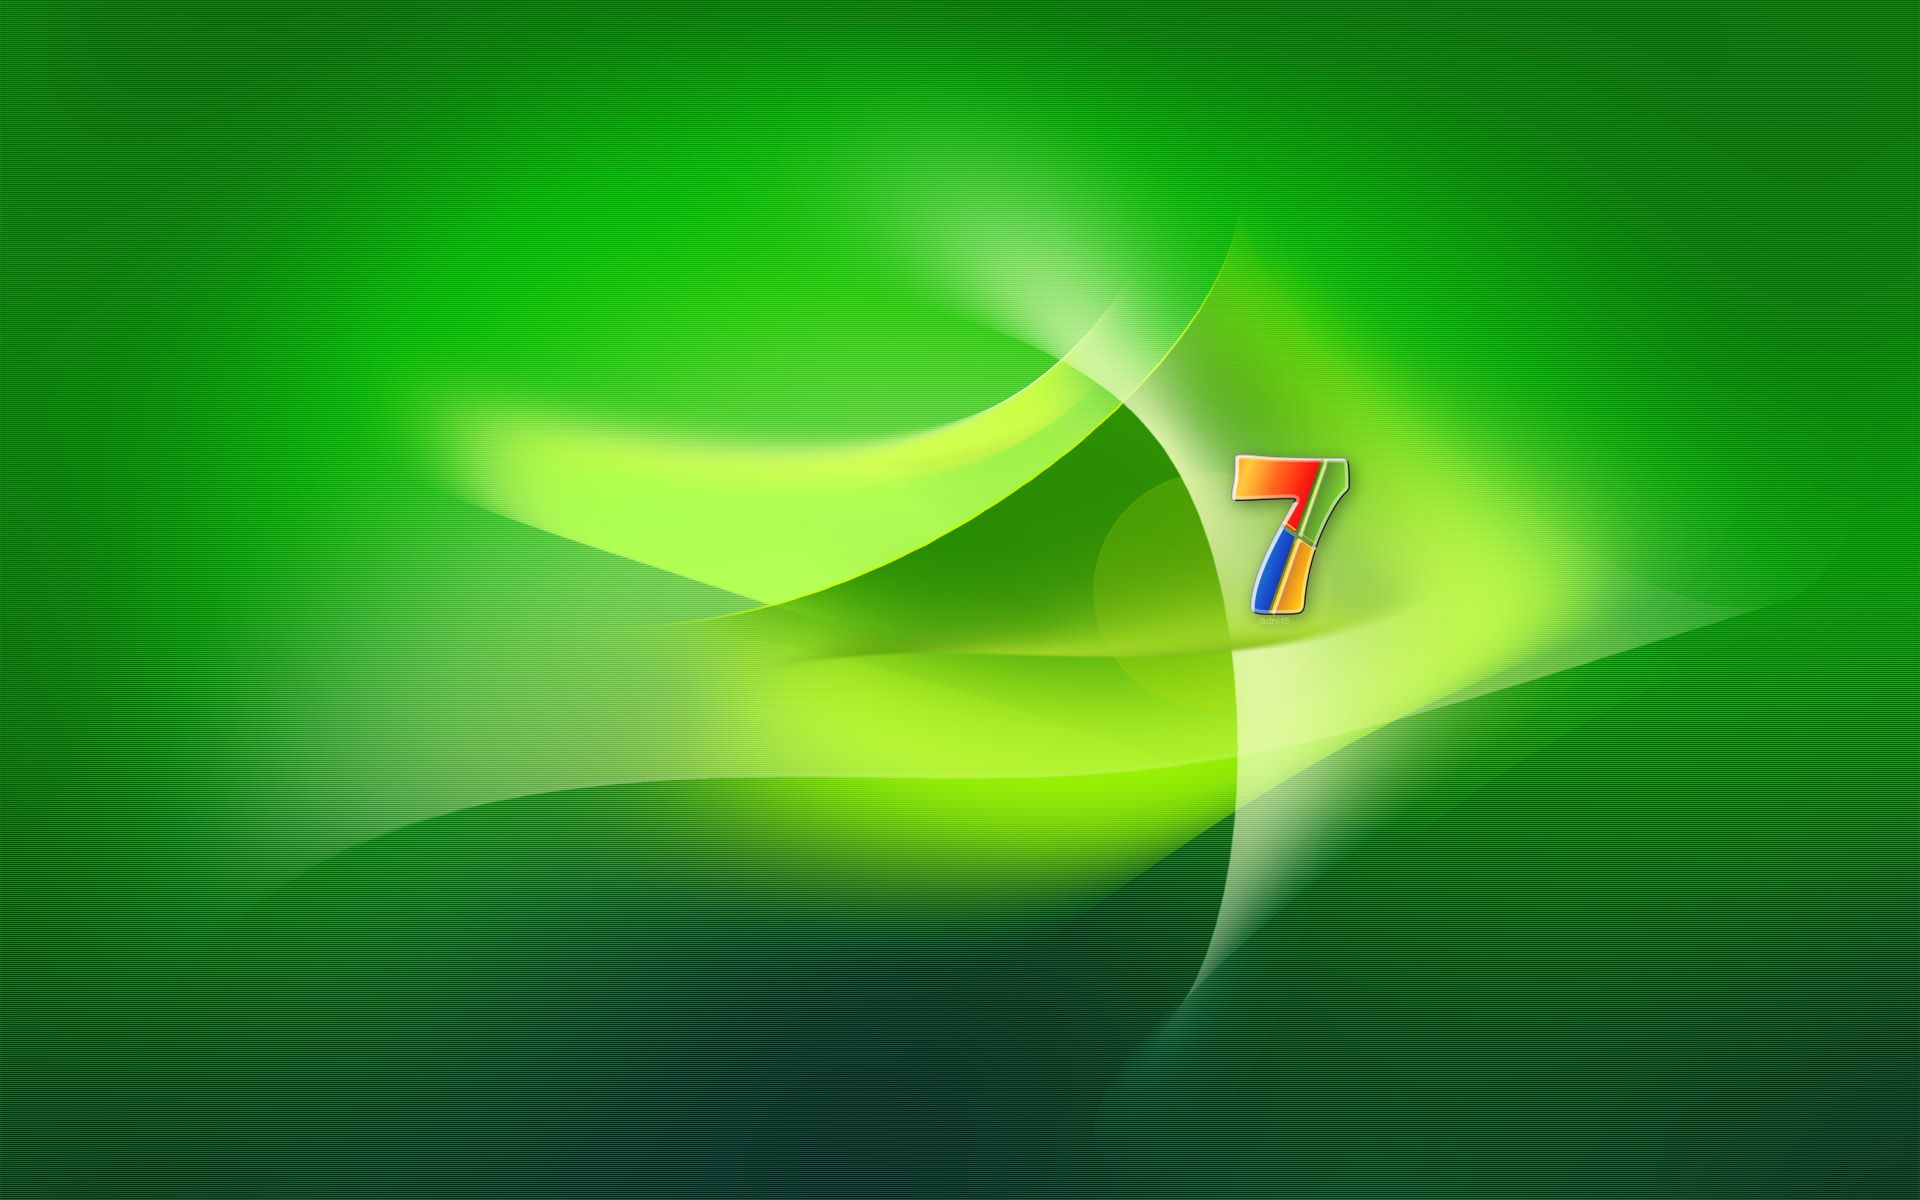 Windows 7 là phiên bản huyền thoại của hệ điều hành Windows và bức ảnh nền xanh lá cây của nó là biểu tượng của sự nhanh nhẹn và tin cậy. Hãy xem hình ảnh này để đưa bạn trở lại những thời kỳ tuyệt vời của máy tính cá nhân!